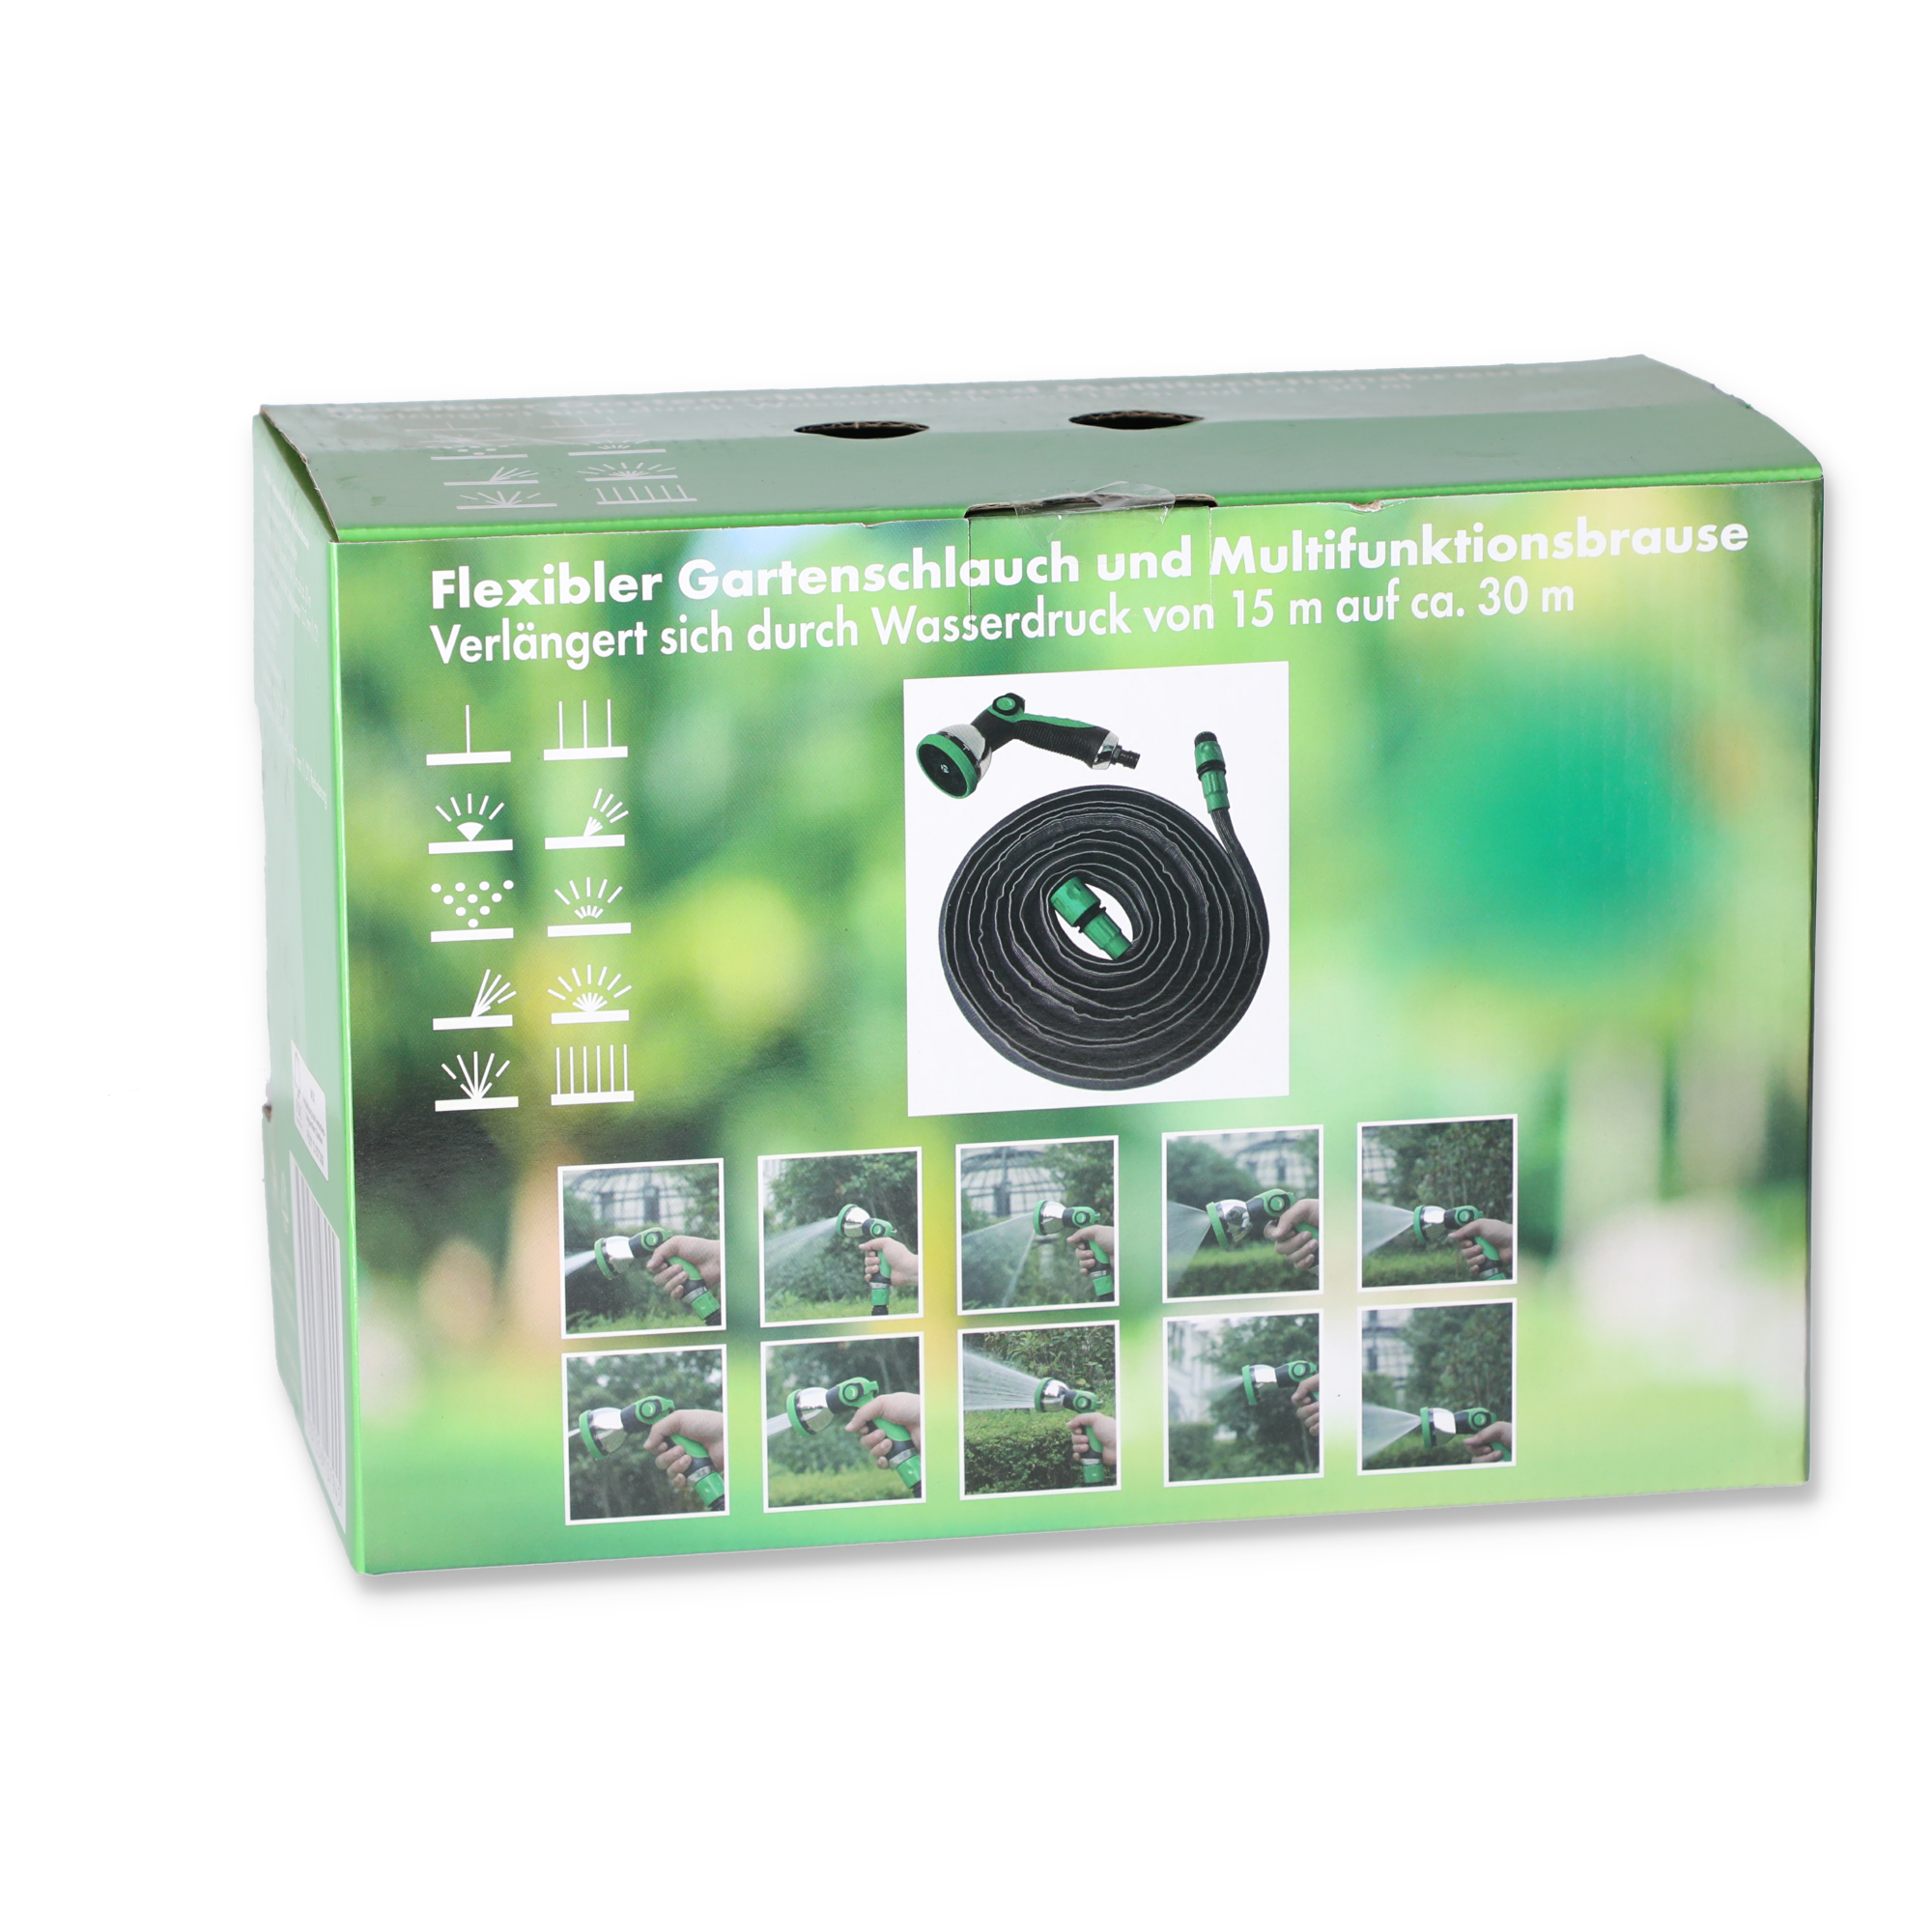 Flex-Gartenschlauch mit Multifunktionsbrause 7,5-15 m + product picture